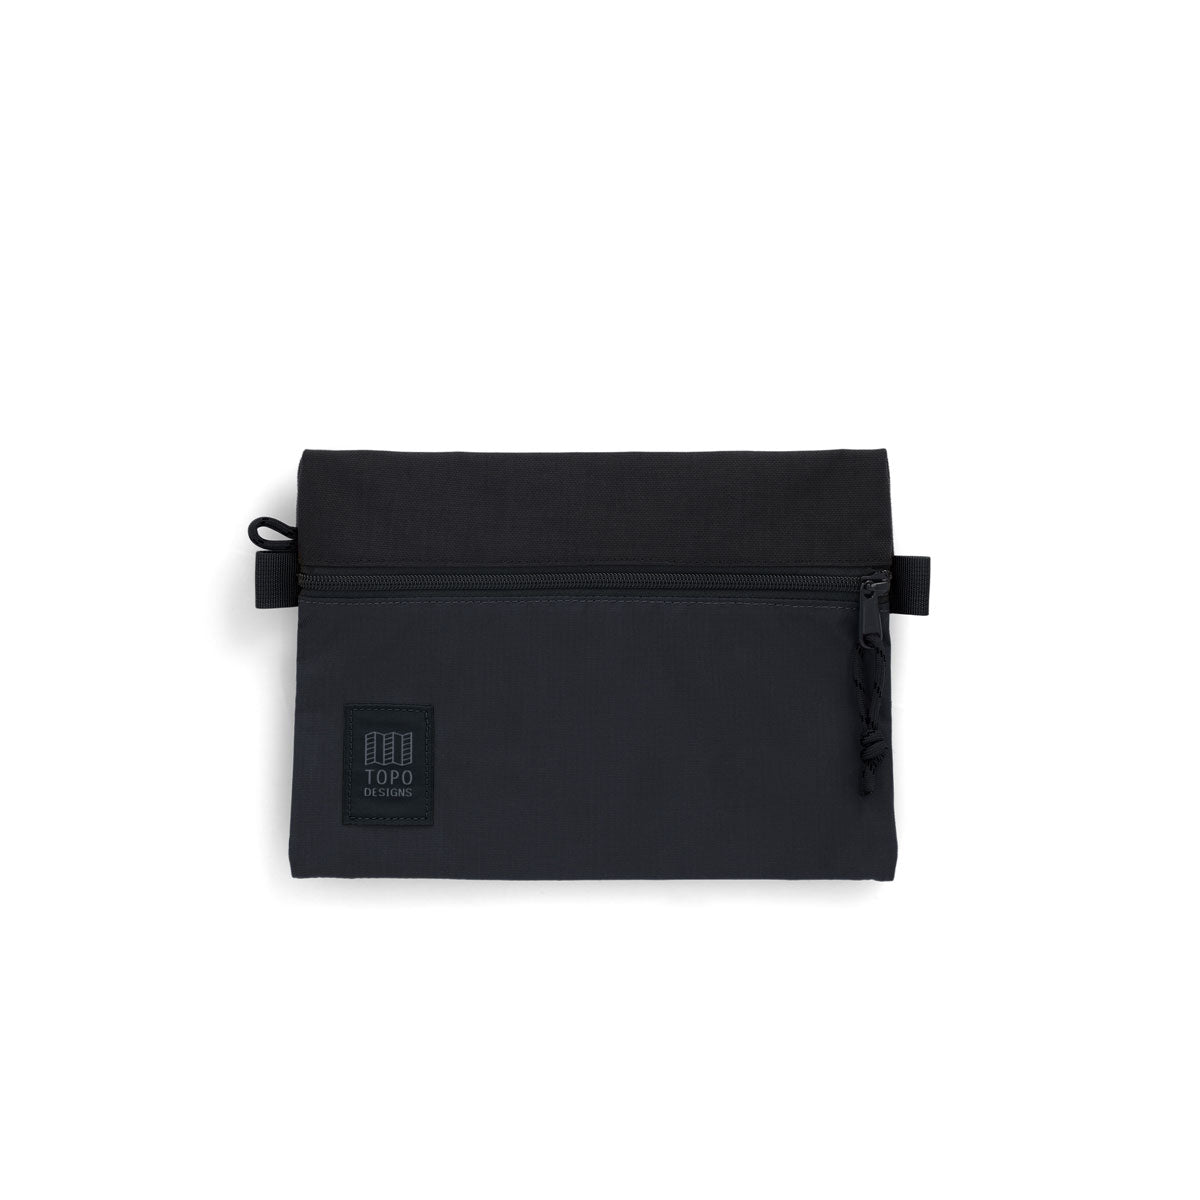 Topo Designs : Accessory Bag : Black/Black/Black